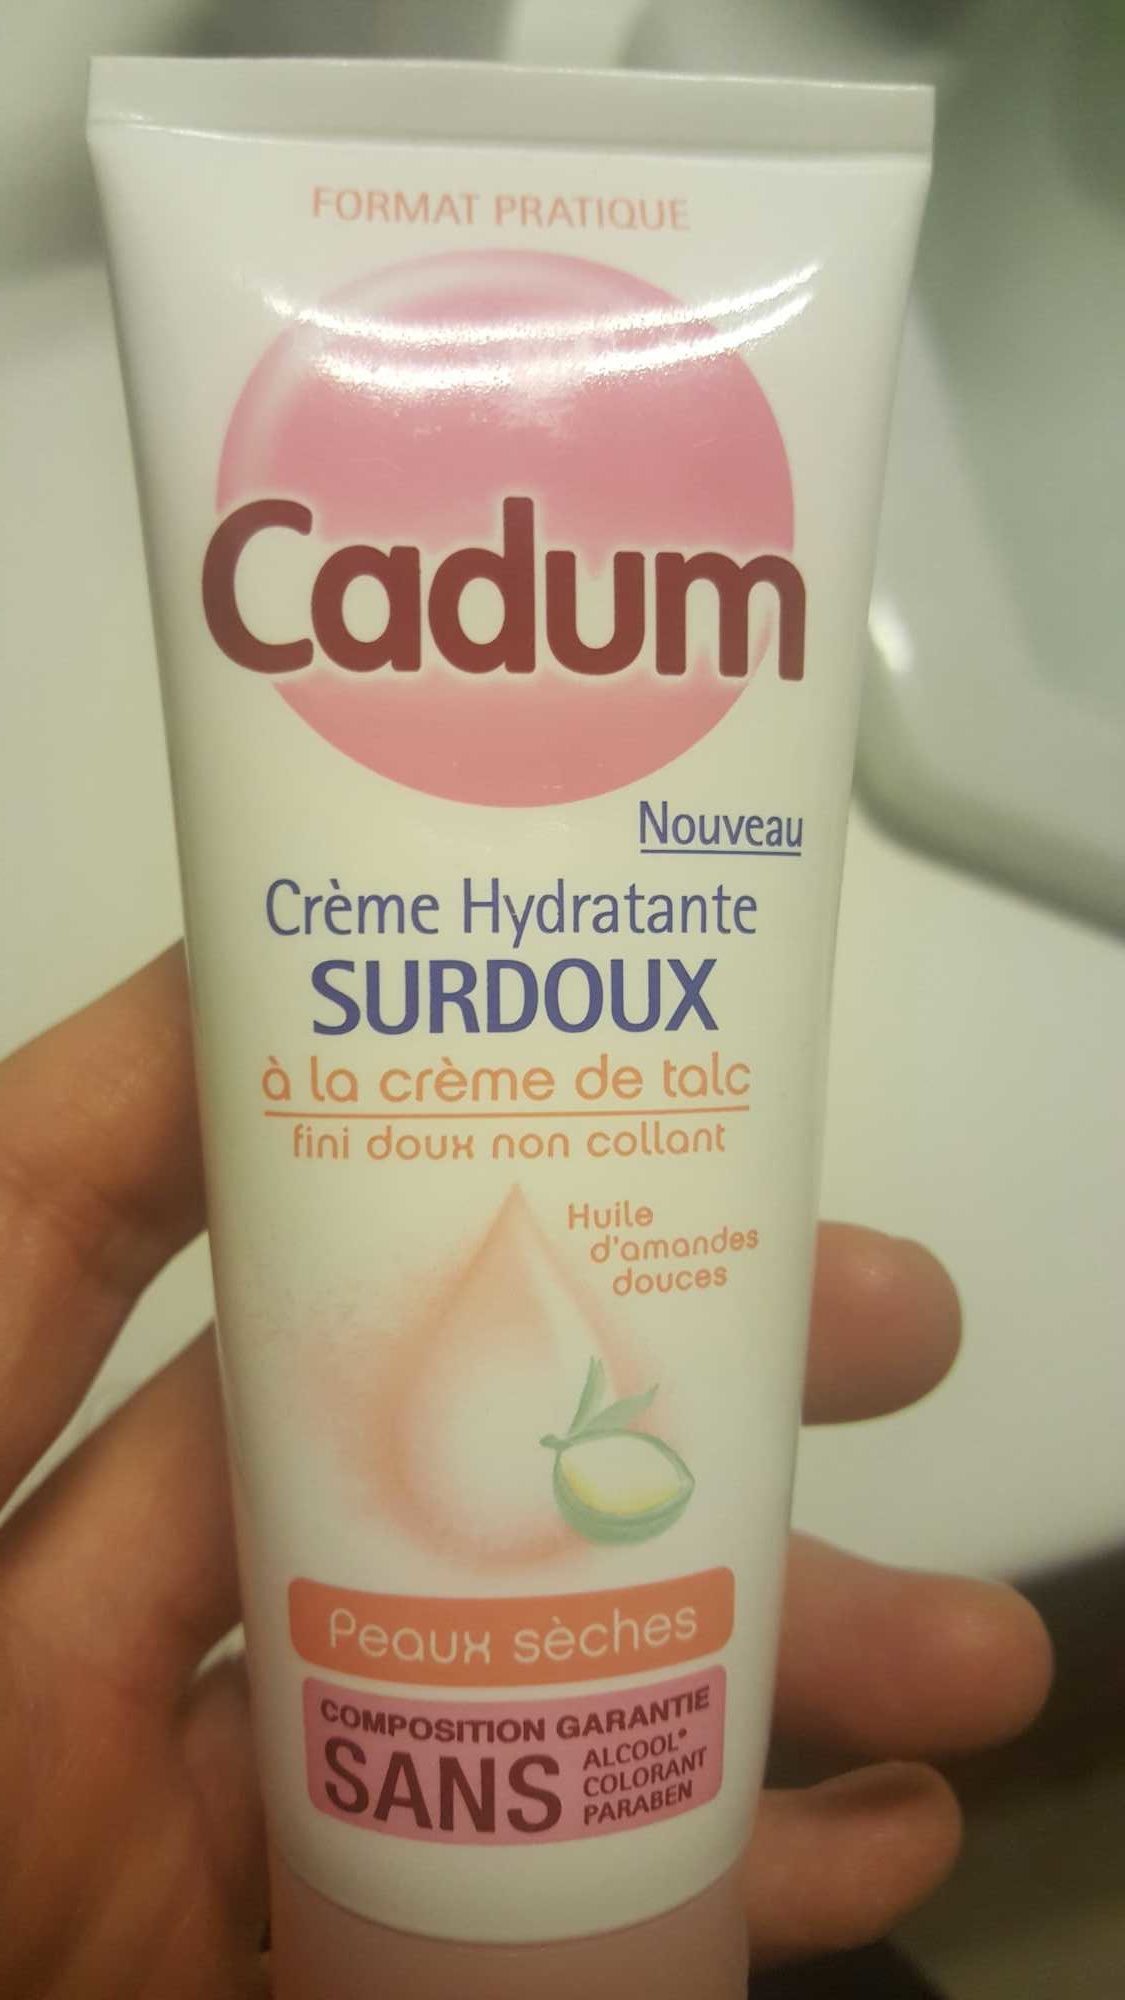 Crème hydratante surdoux à la crème de talc peaux sèches - Produkt - fr